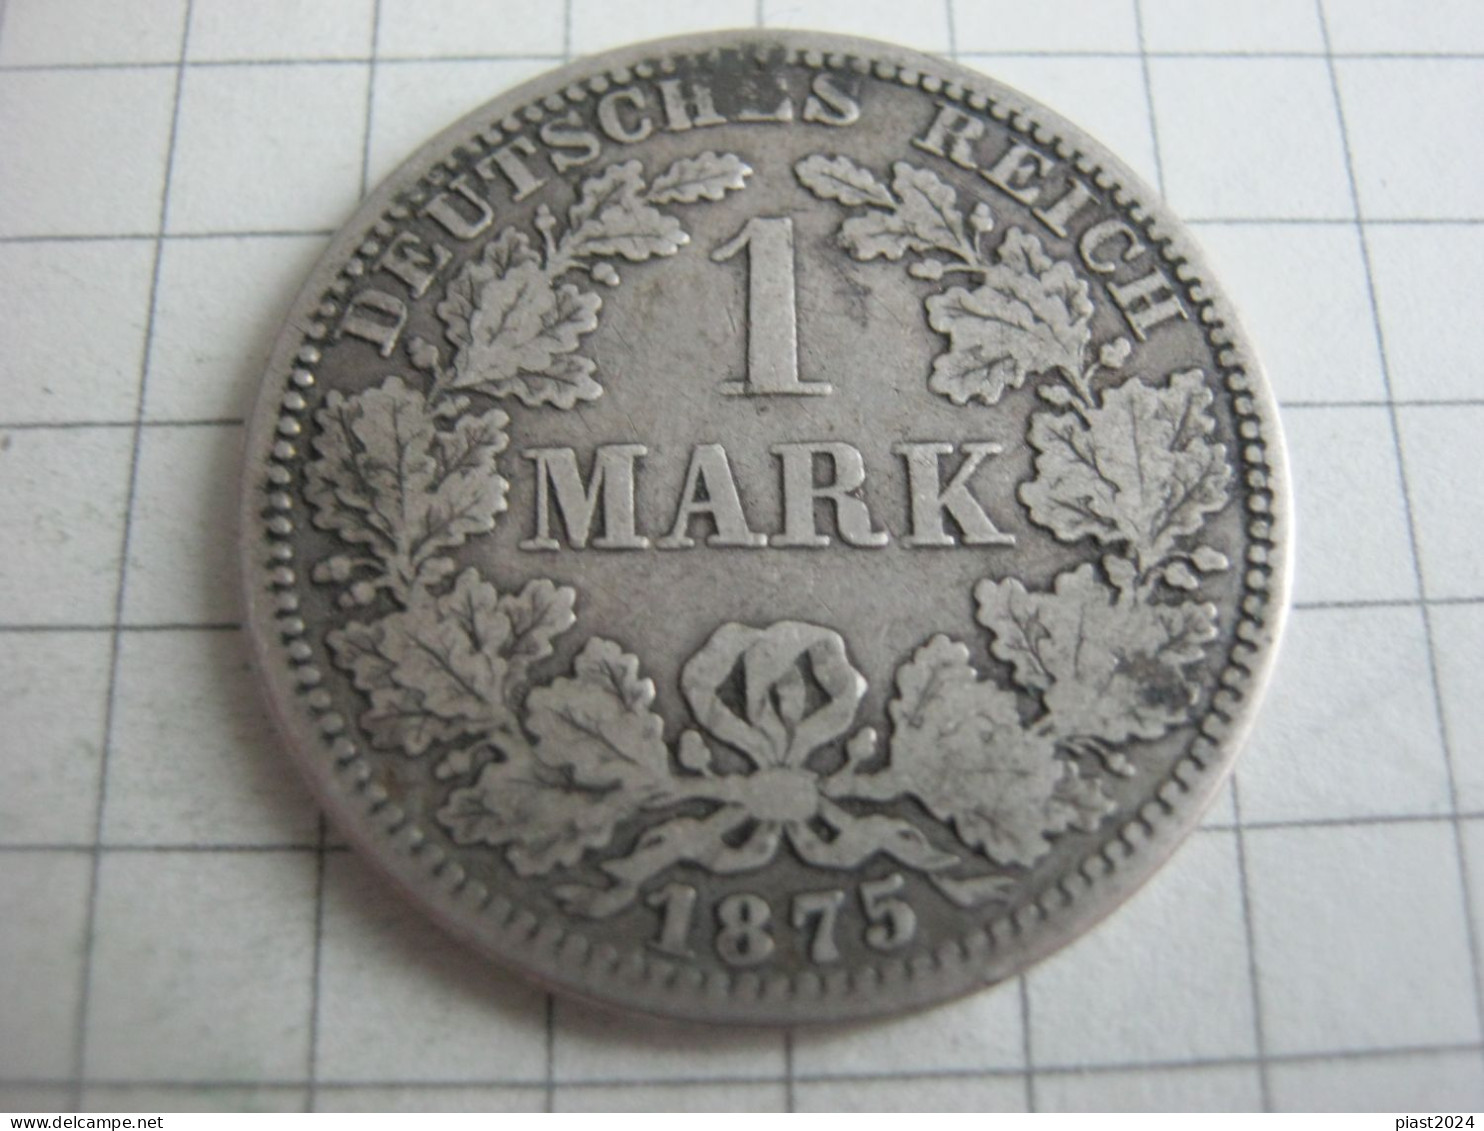 Germany 1 Mark 1875 A - 1 Mark